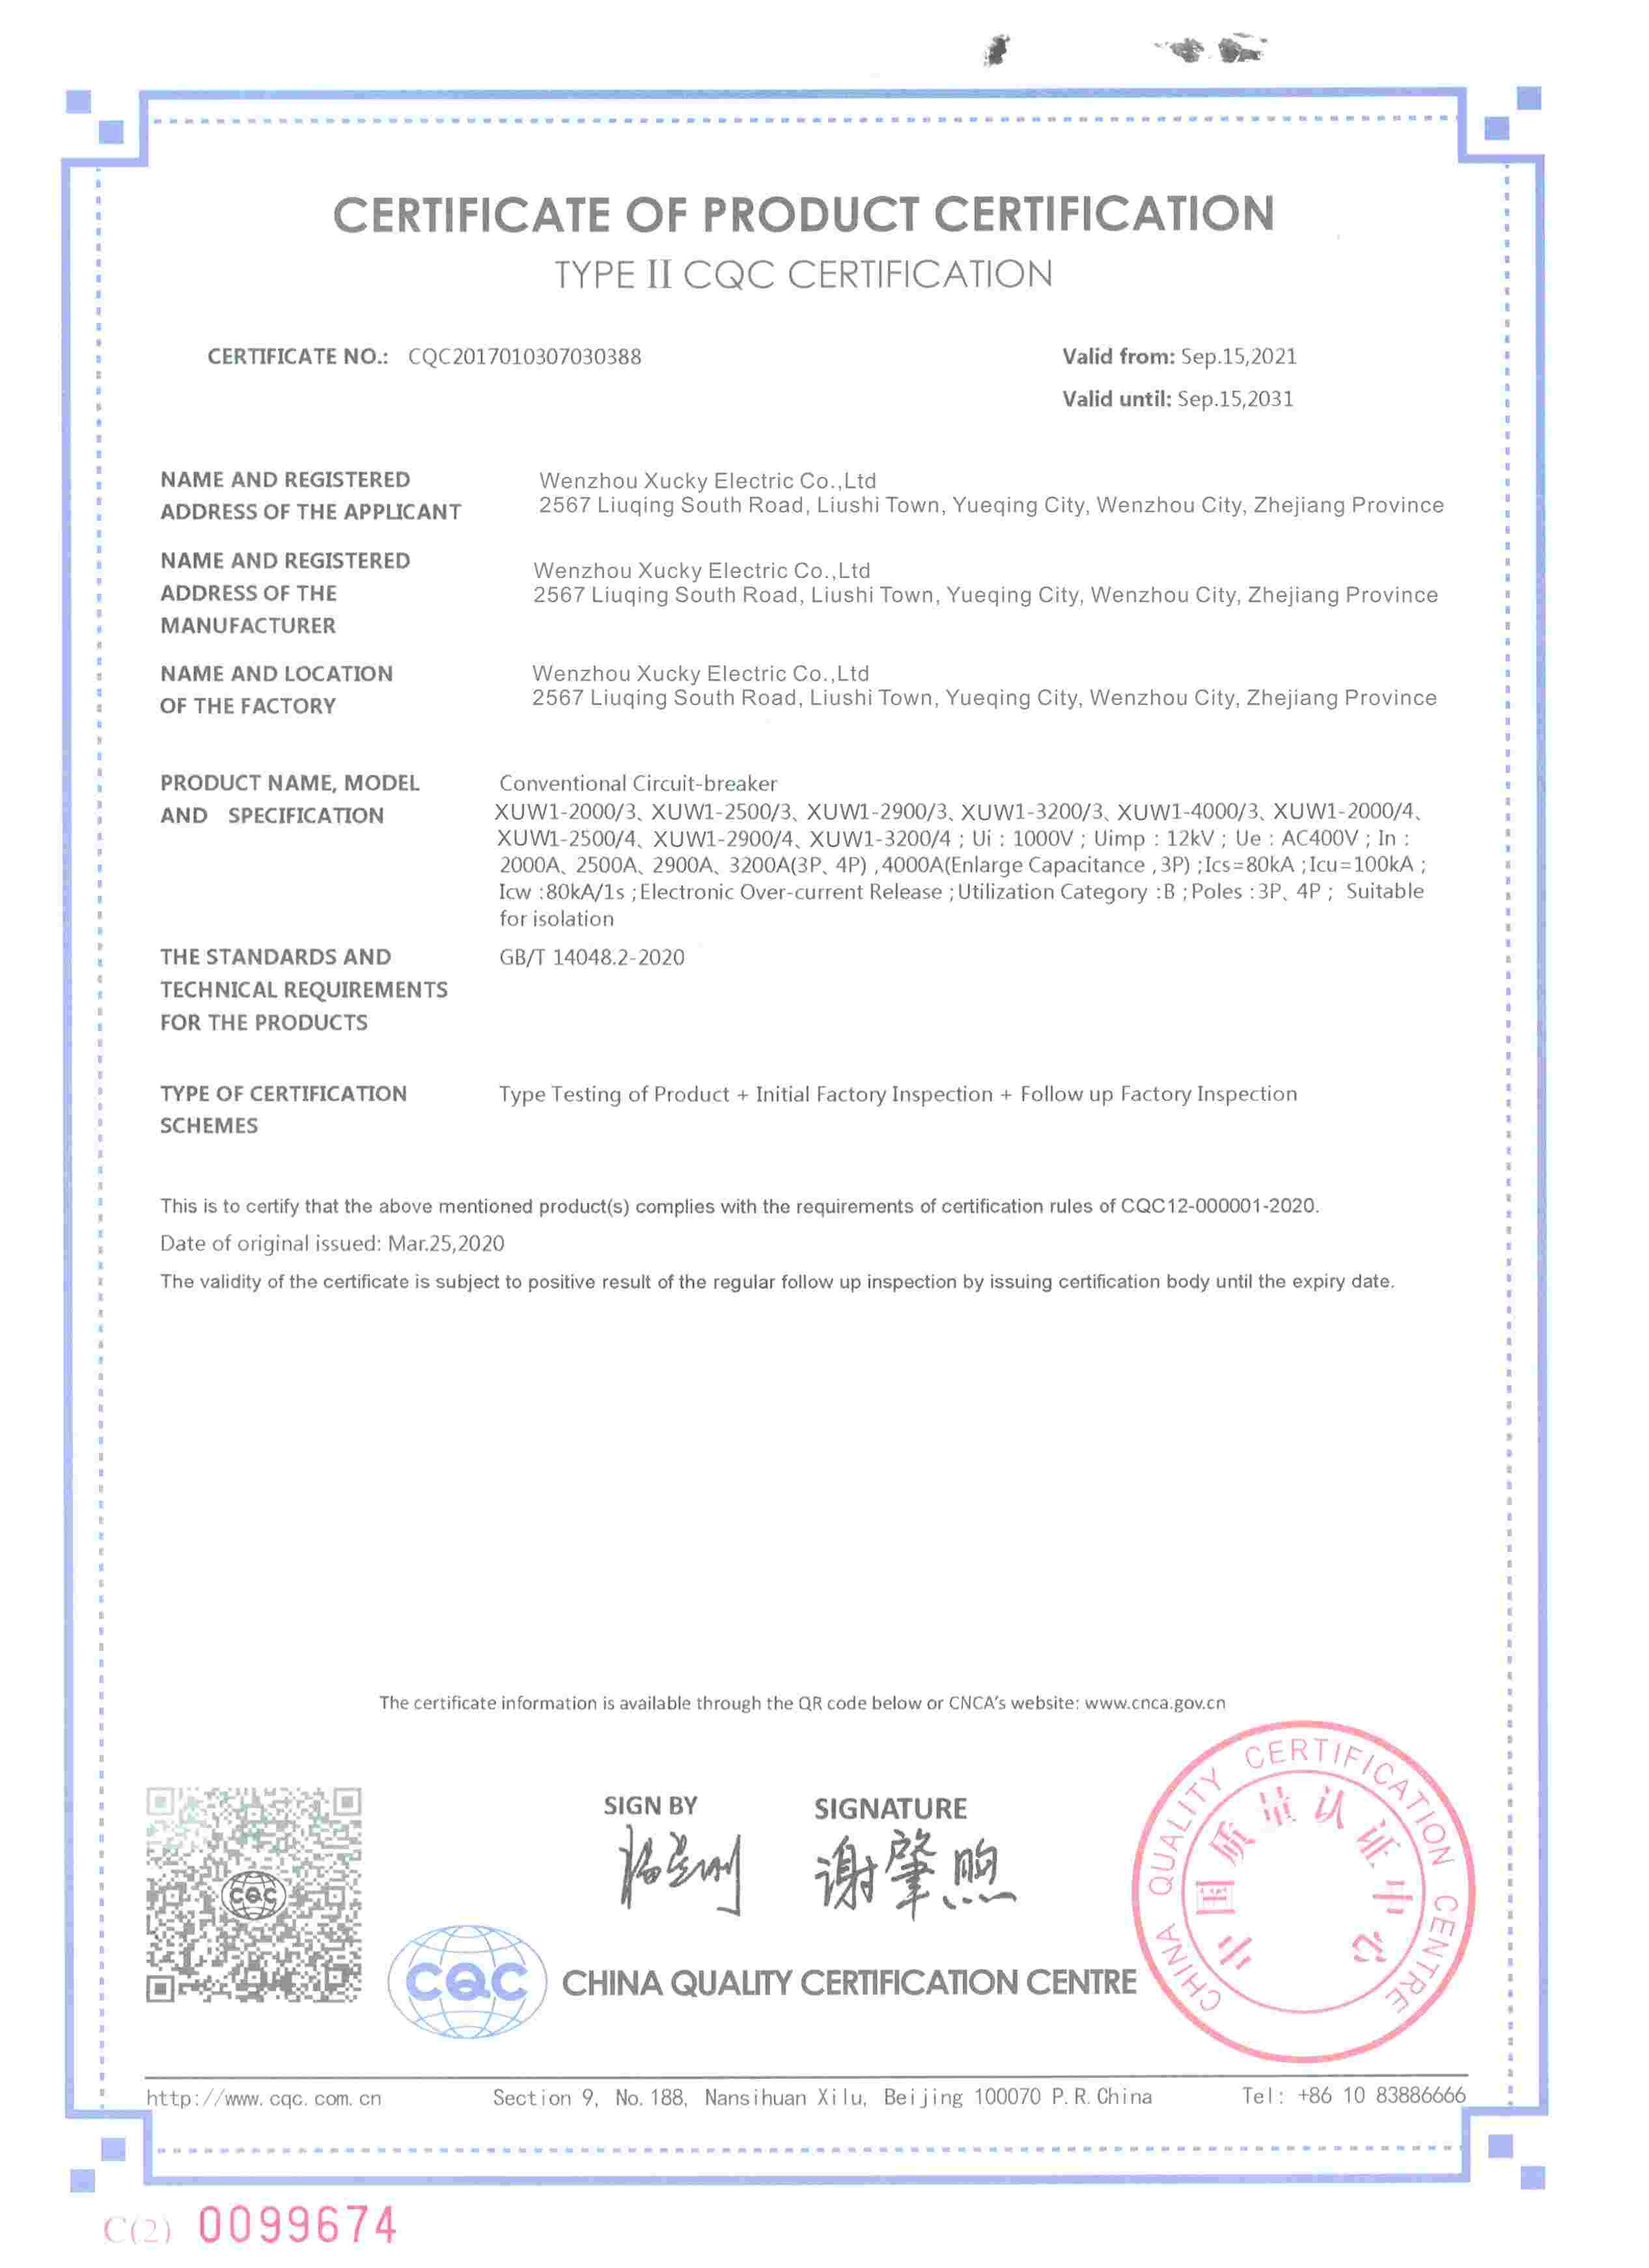 XUW1-2000,2500,3200 -CCC certification.jpg-2024-03-17-14-52-17-585